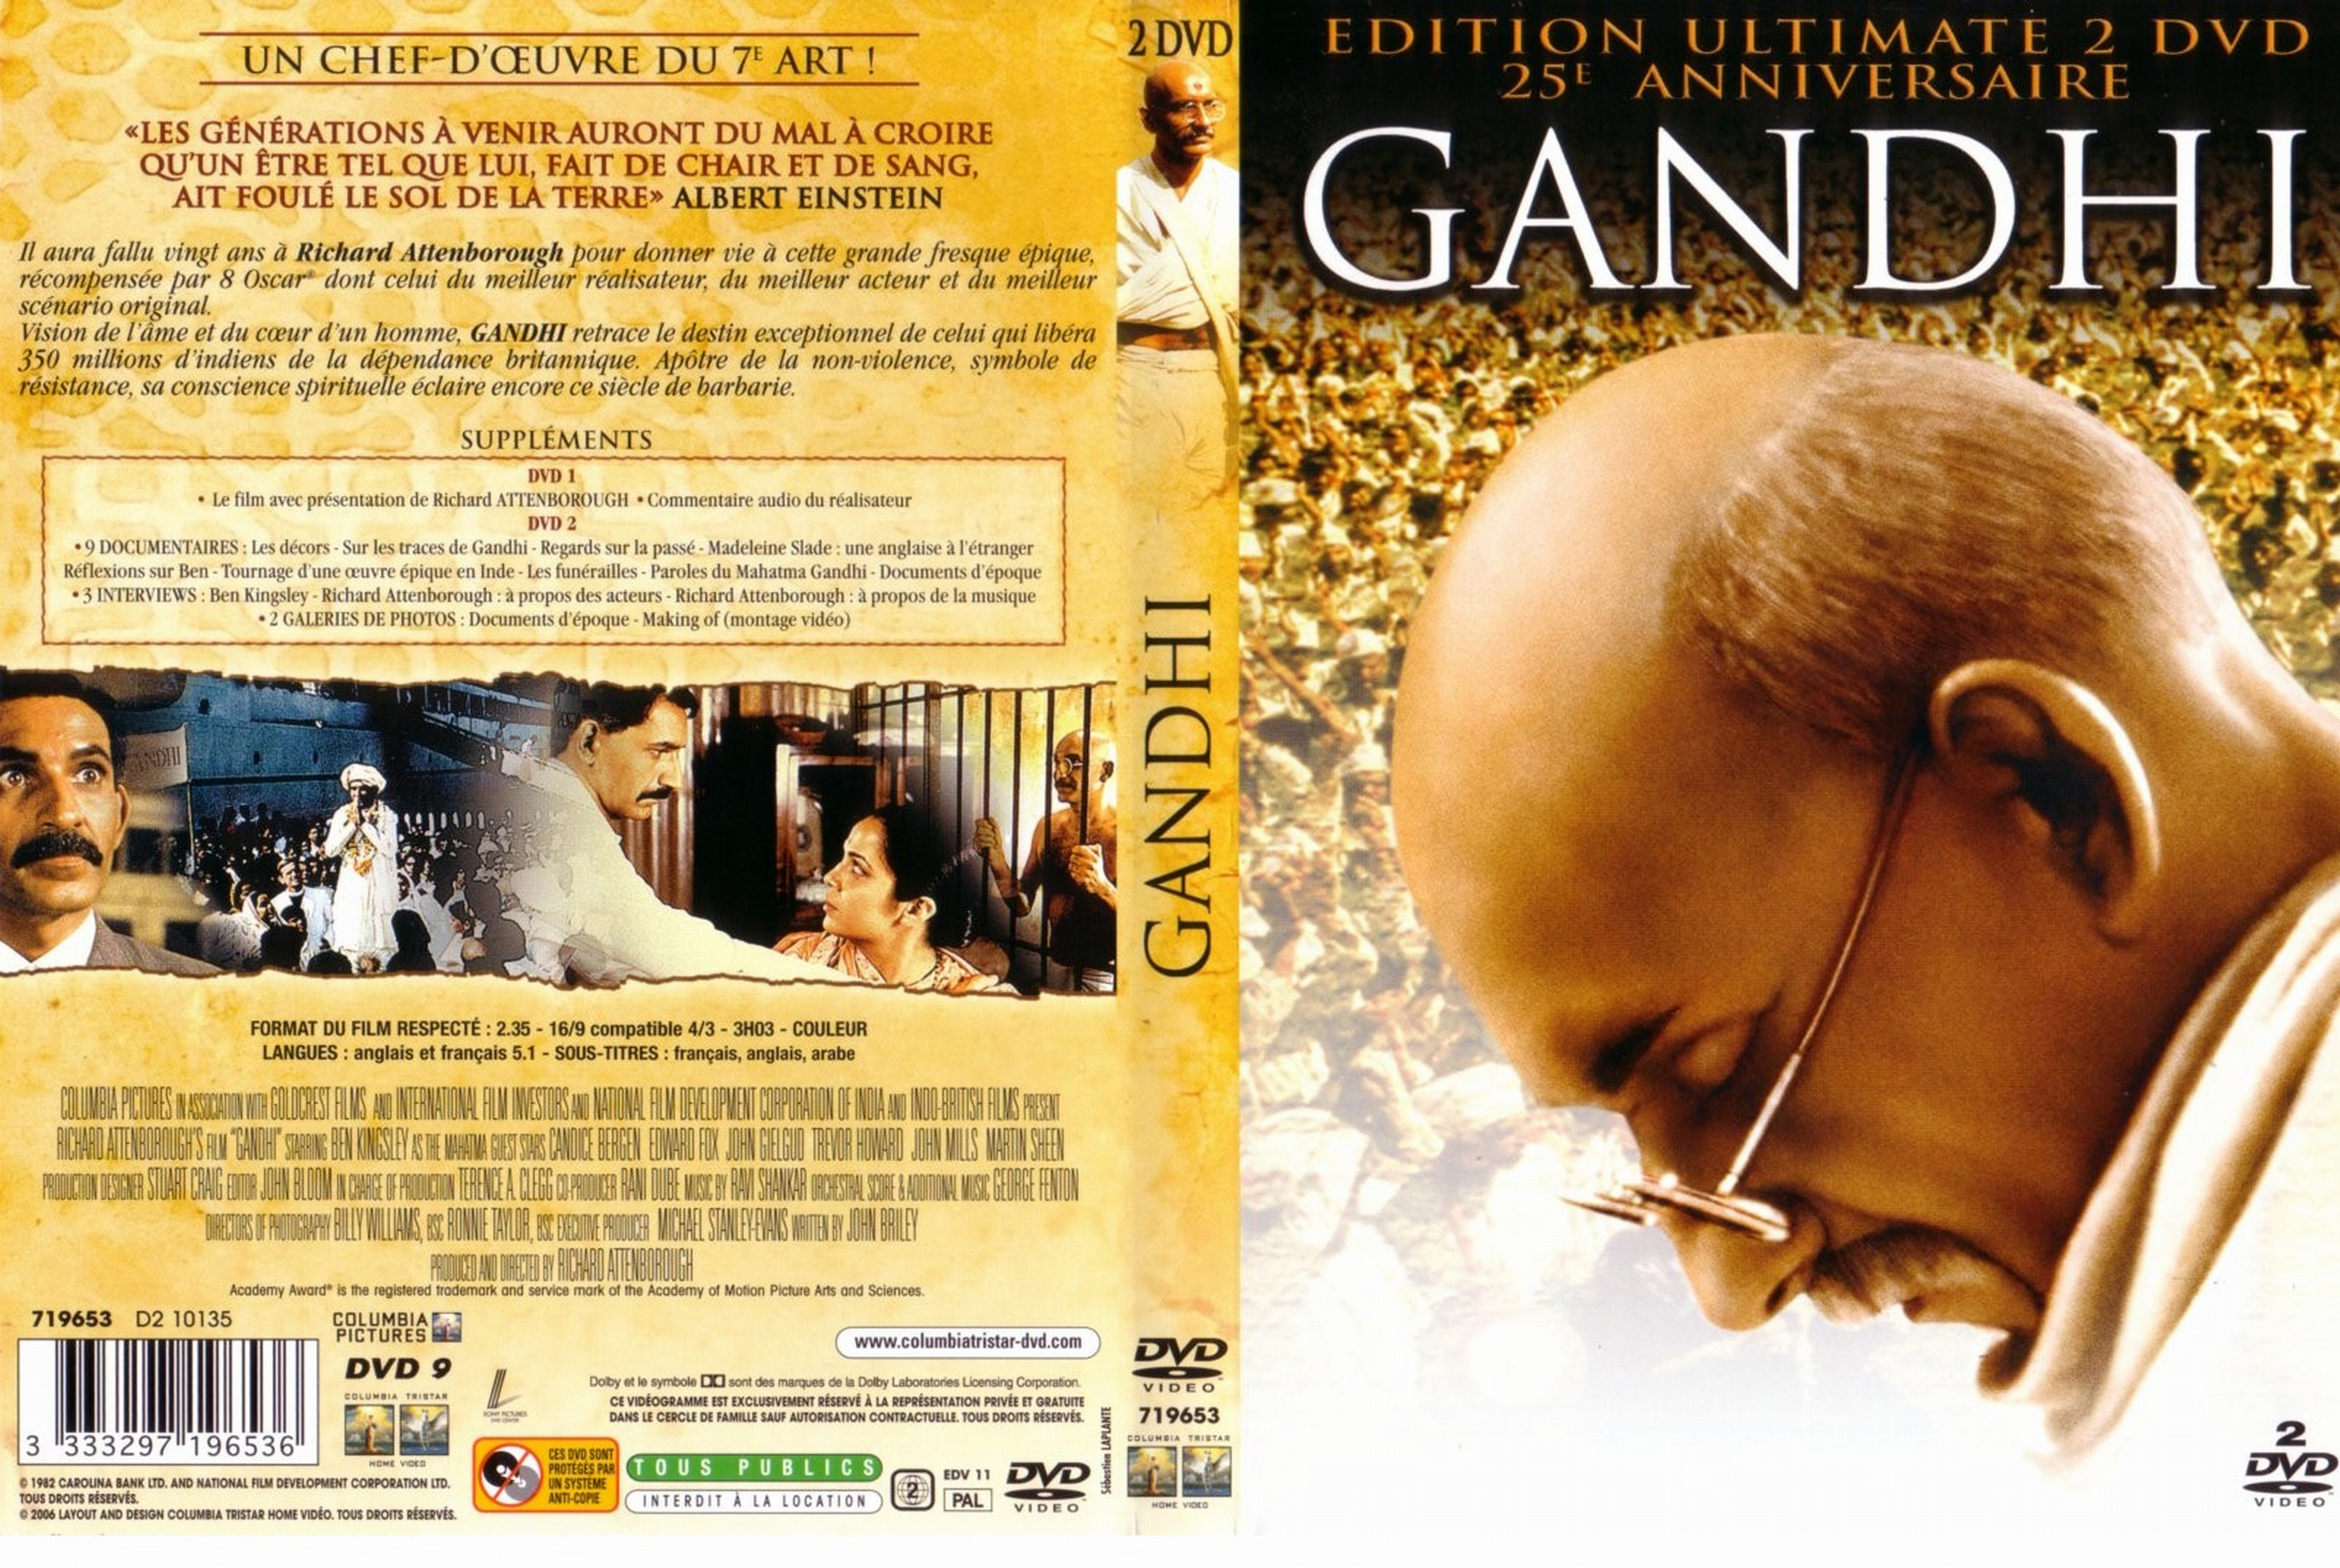 Jaquette DVD Gandhi v2